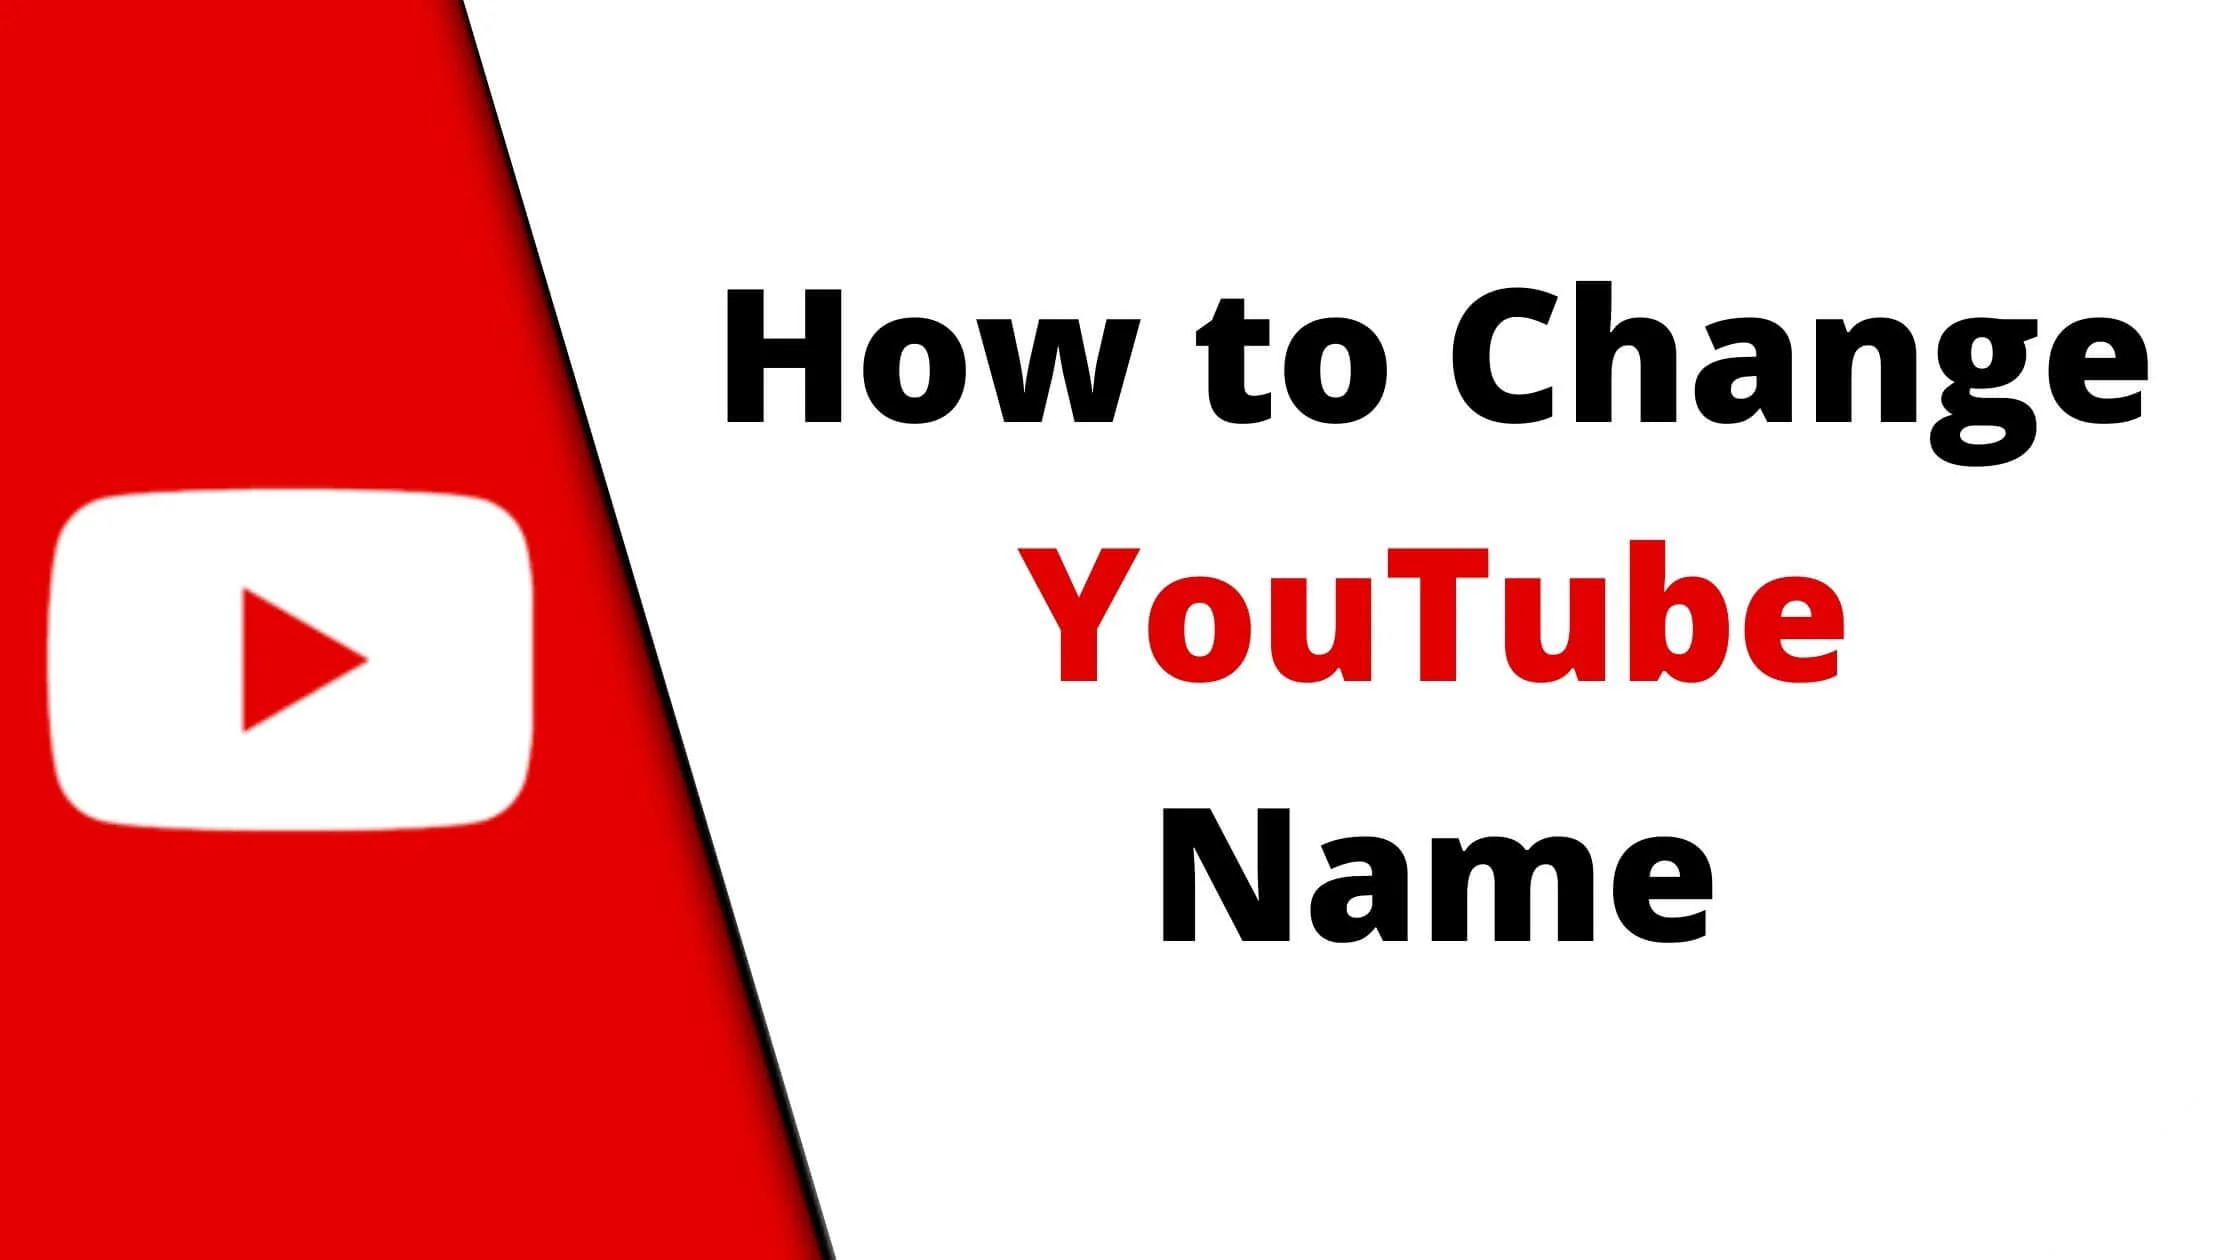 Change YouTube Name